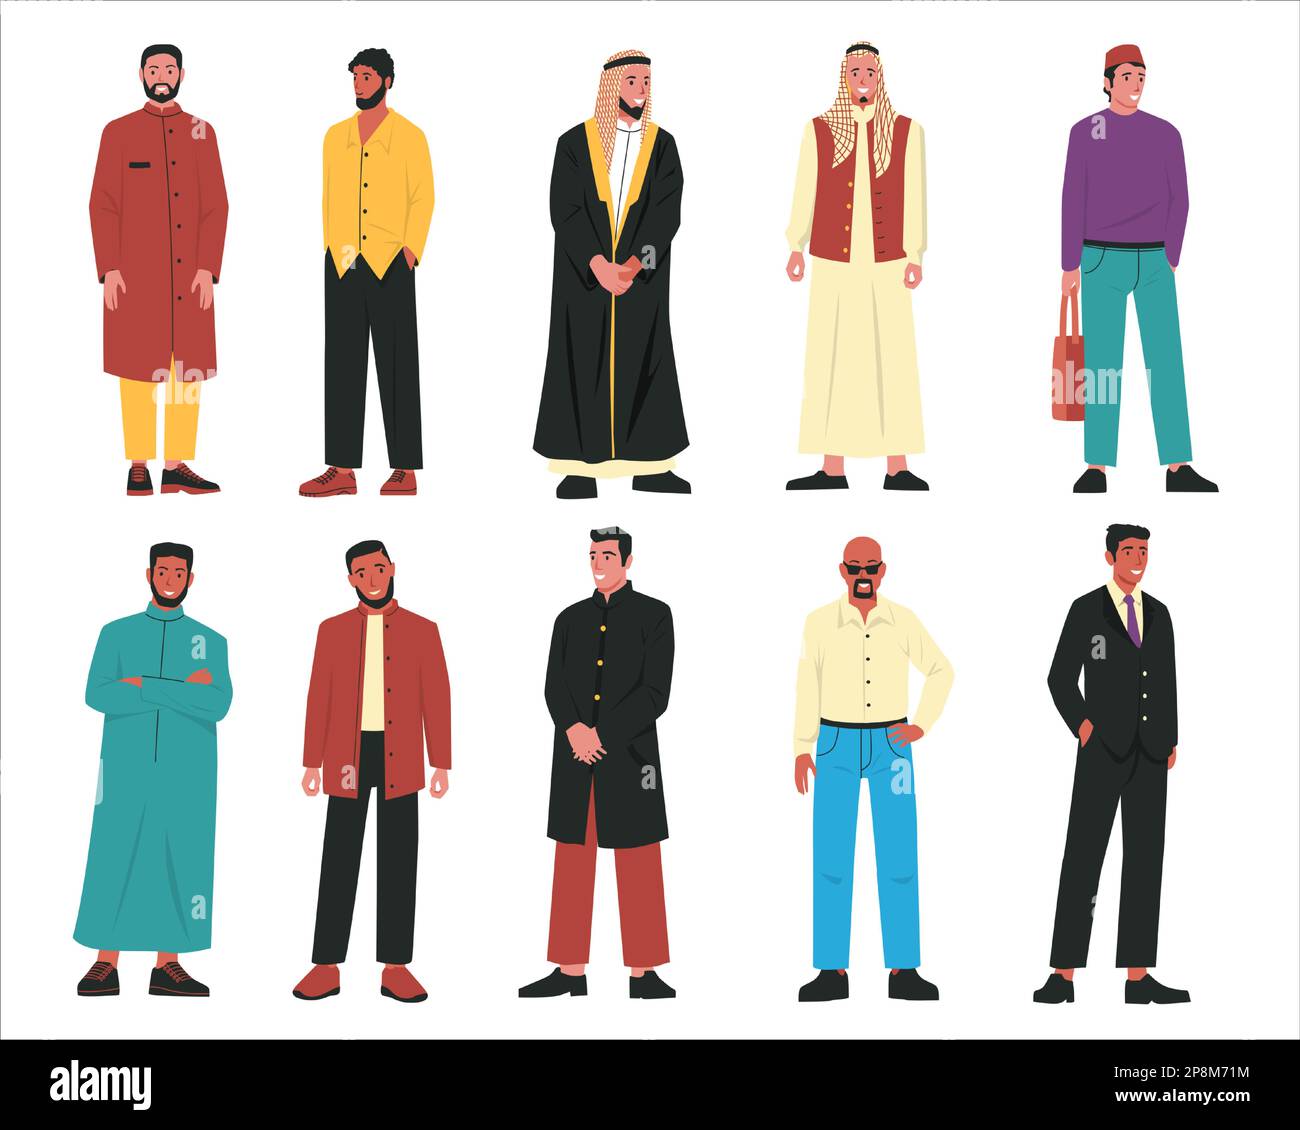 Muslimische Männer. Moderne arabische männliche Figuren in traditioneller arabischer Kleidung und stilvollen, lässigen Outfits, Porträts islamischer Menschen. Vektor-Cartoon-Set Stock Vektor